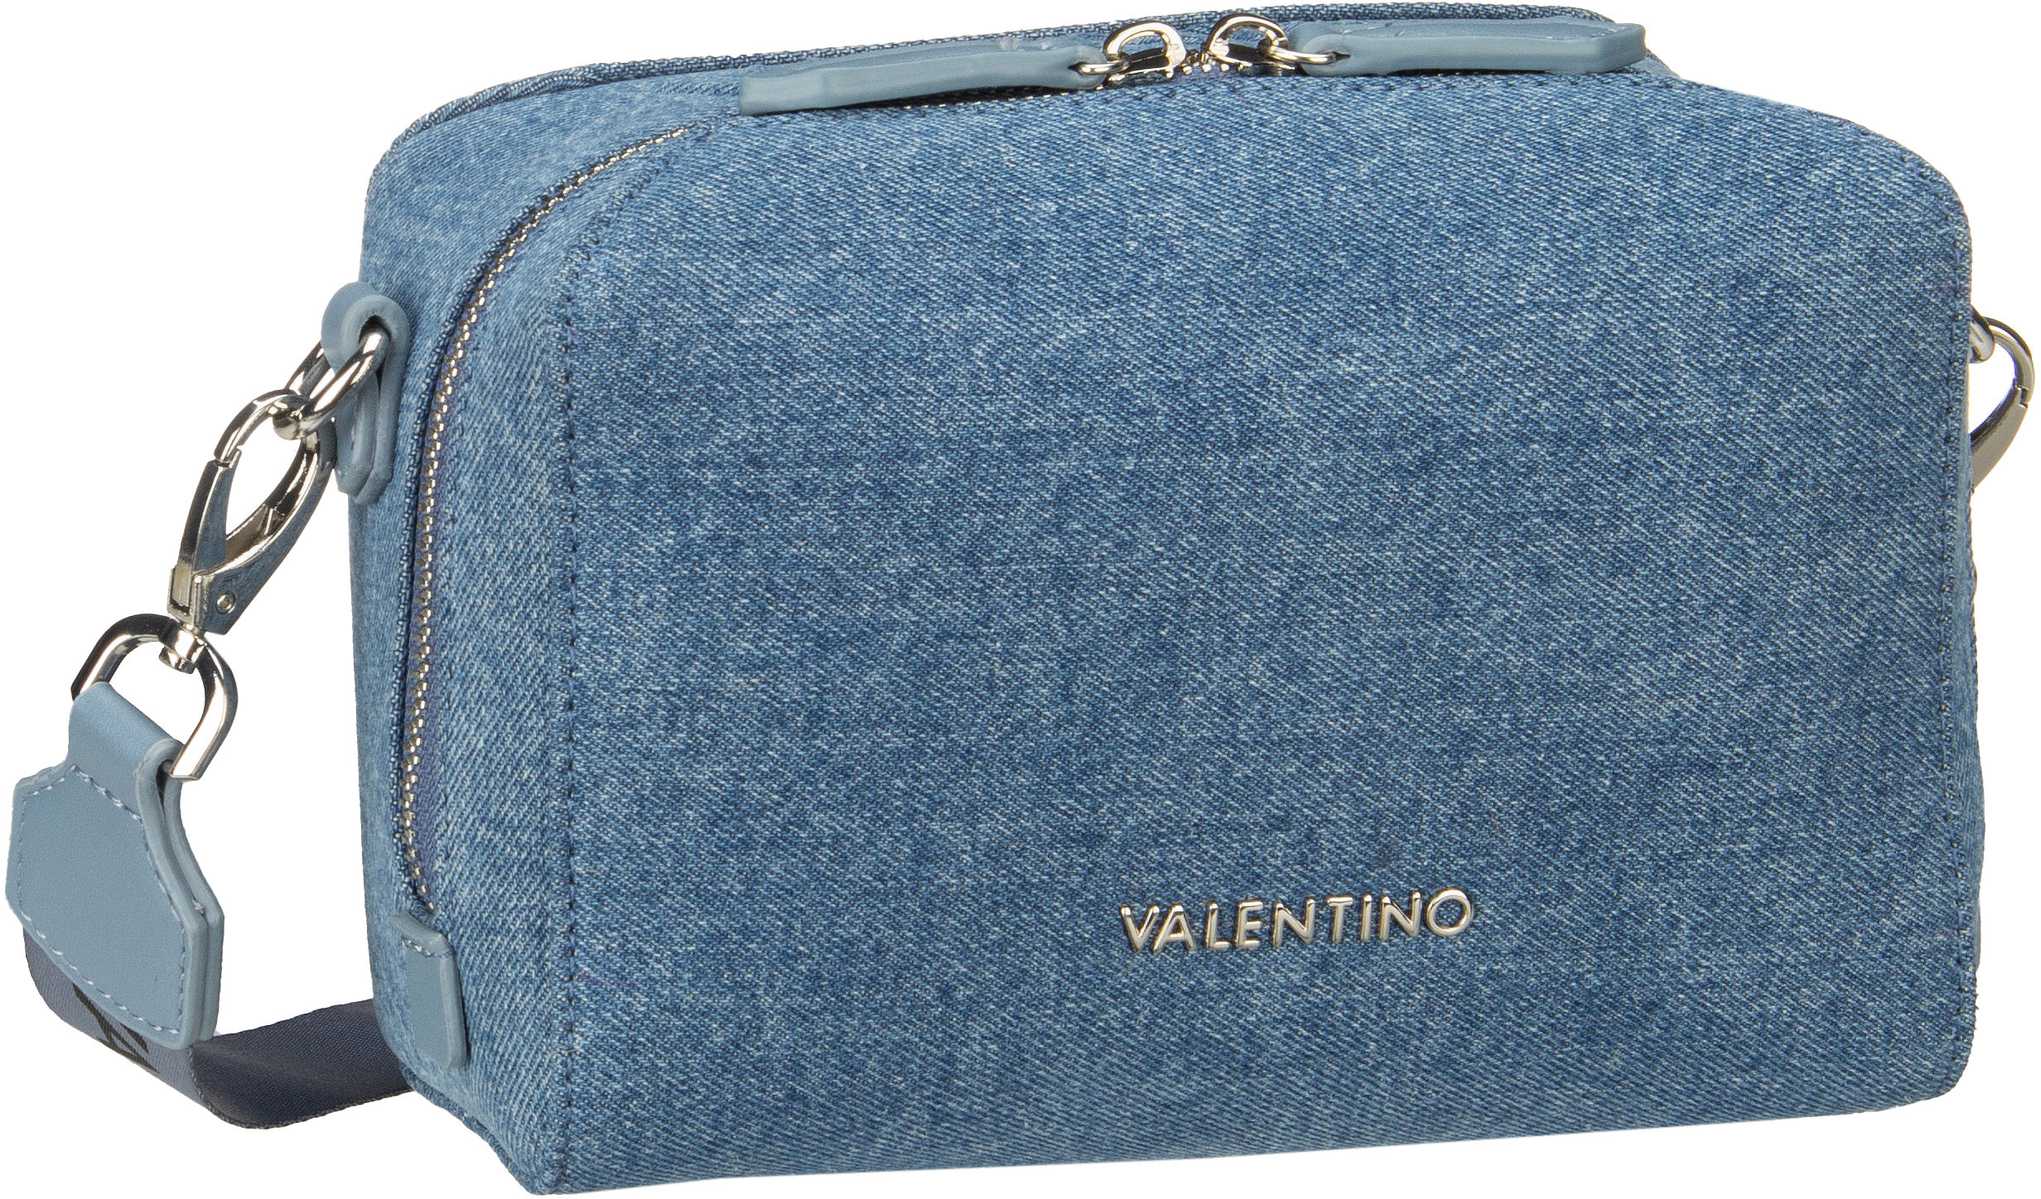 Valentino Pattie  1RE  in Blau (3.2 Liter), Umhängetasche